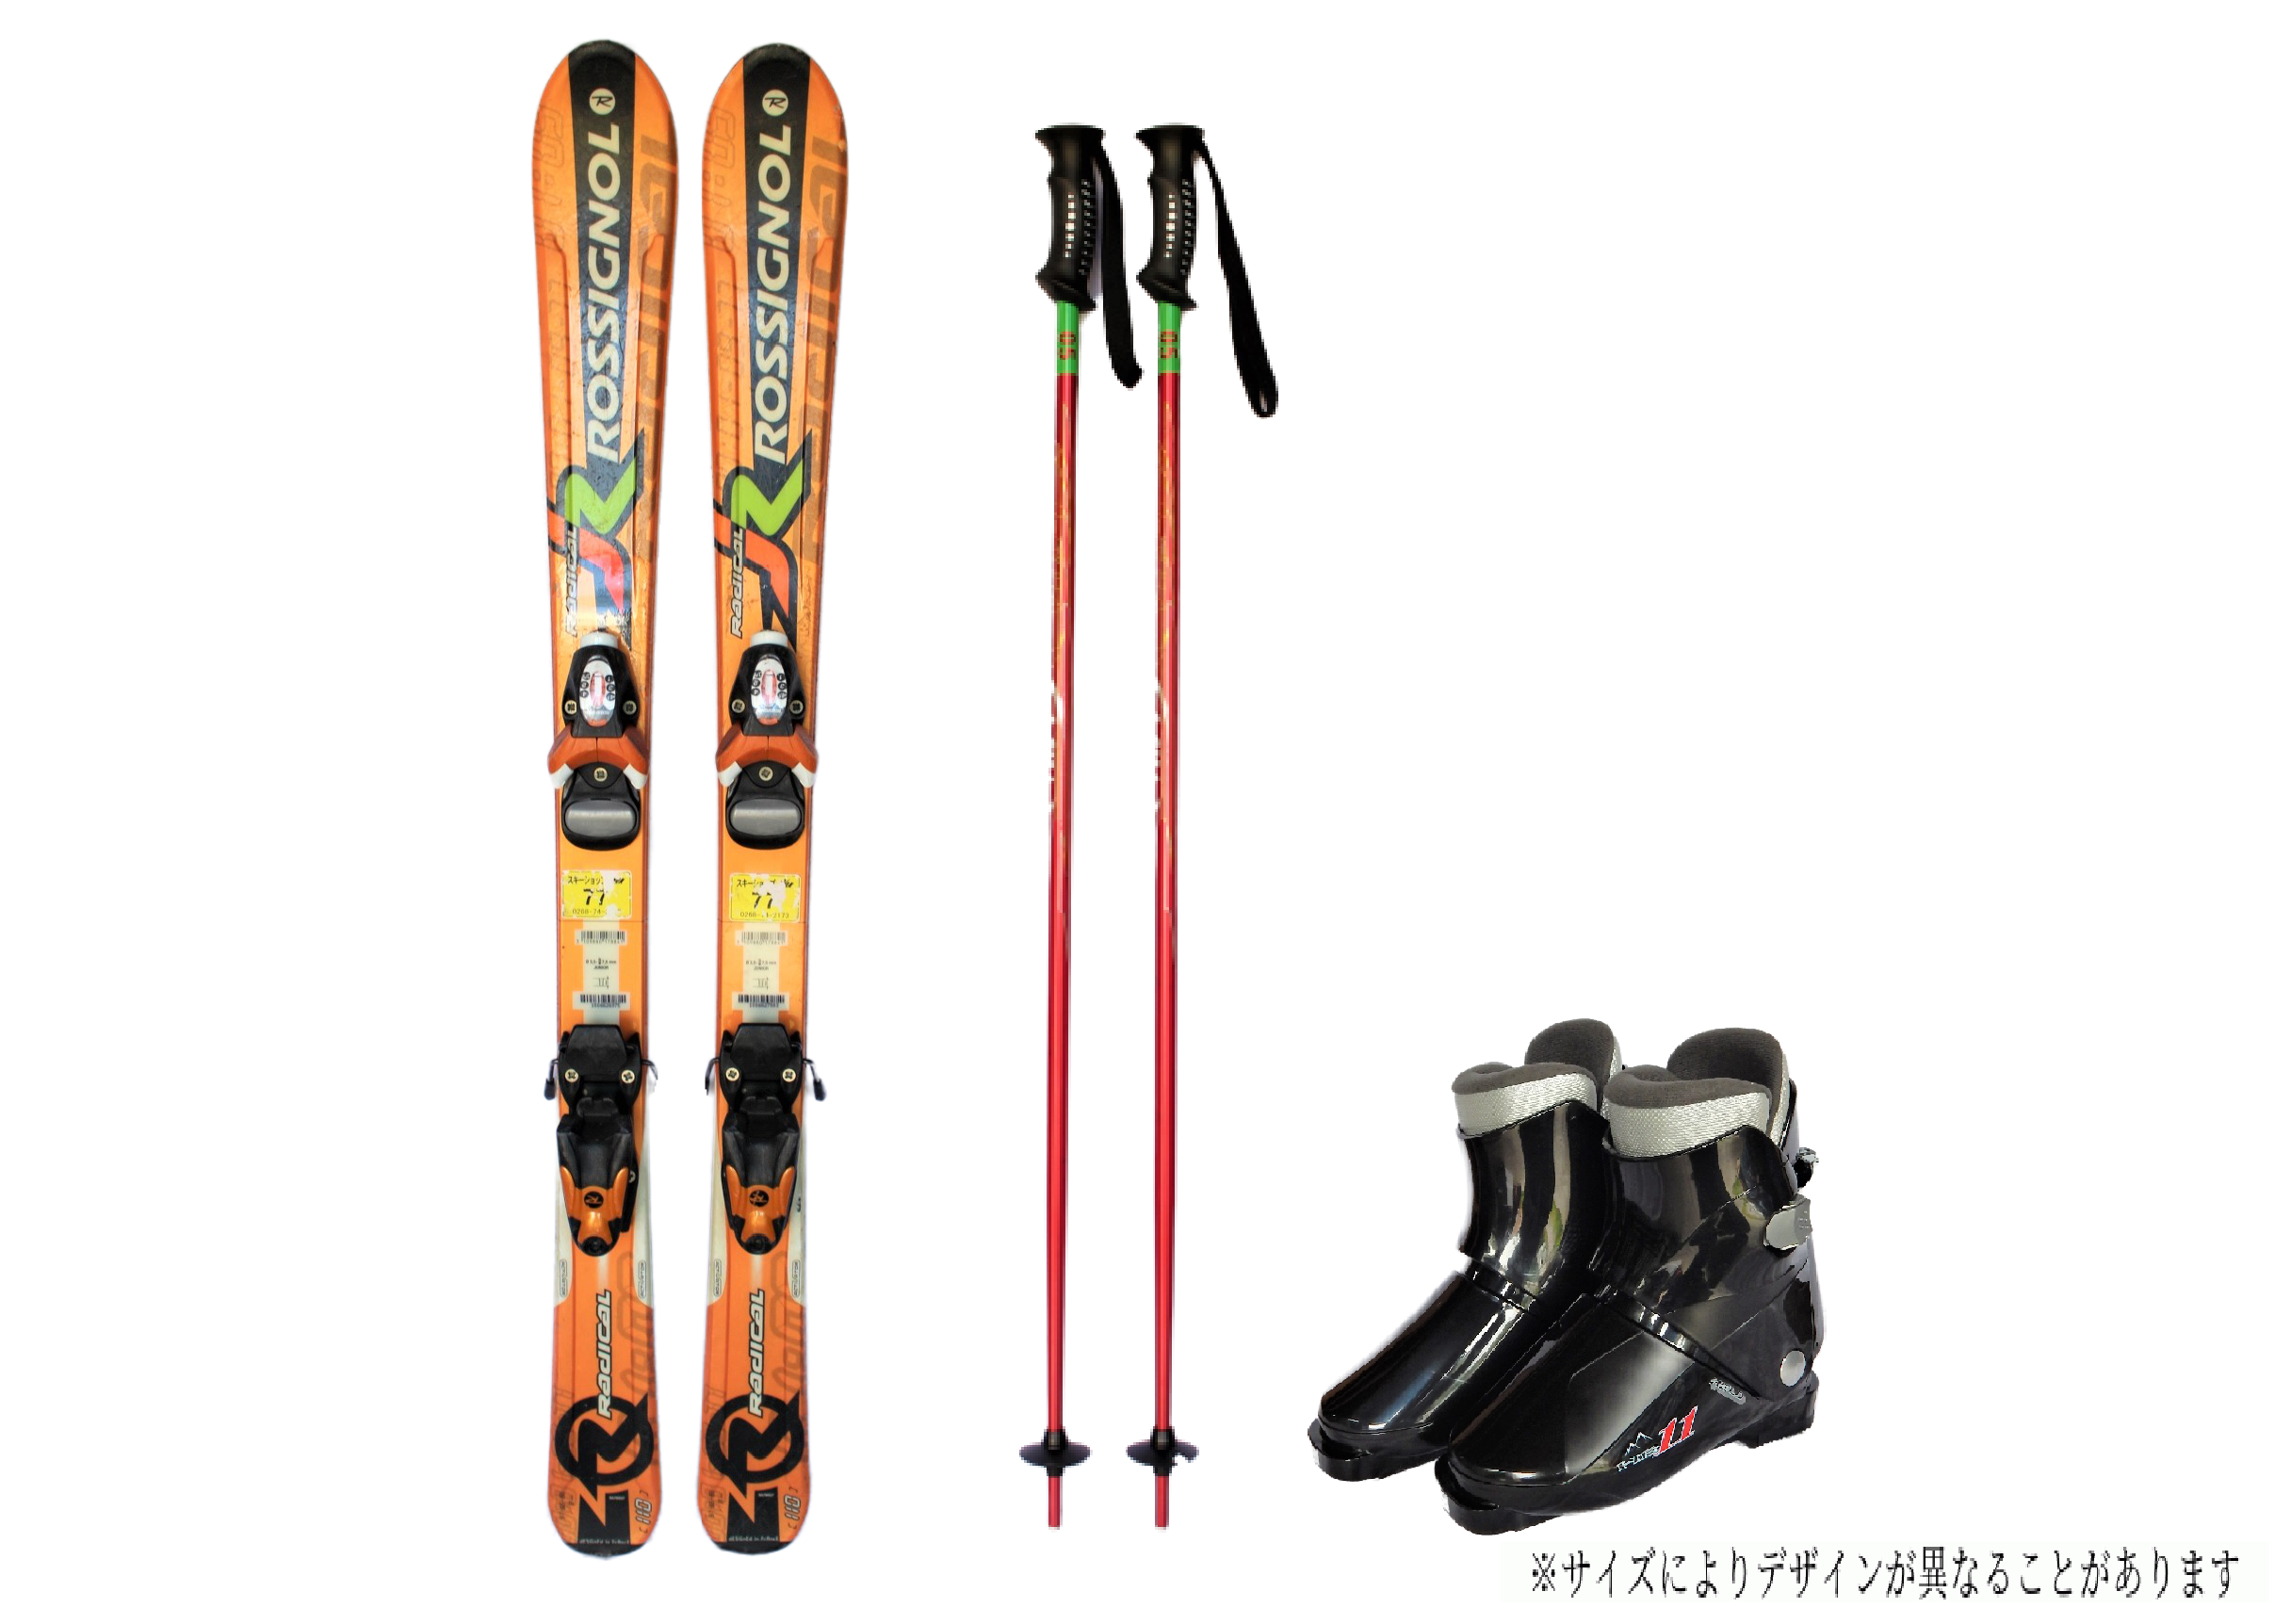 【3月開催スキー・スノーボードツアー】レンタルスキー・レンタルスノーボード申込ページ